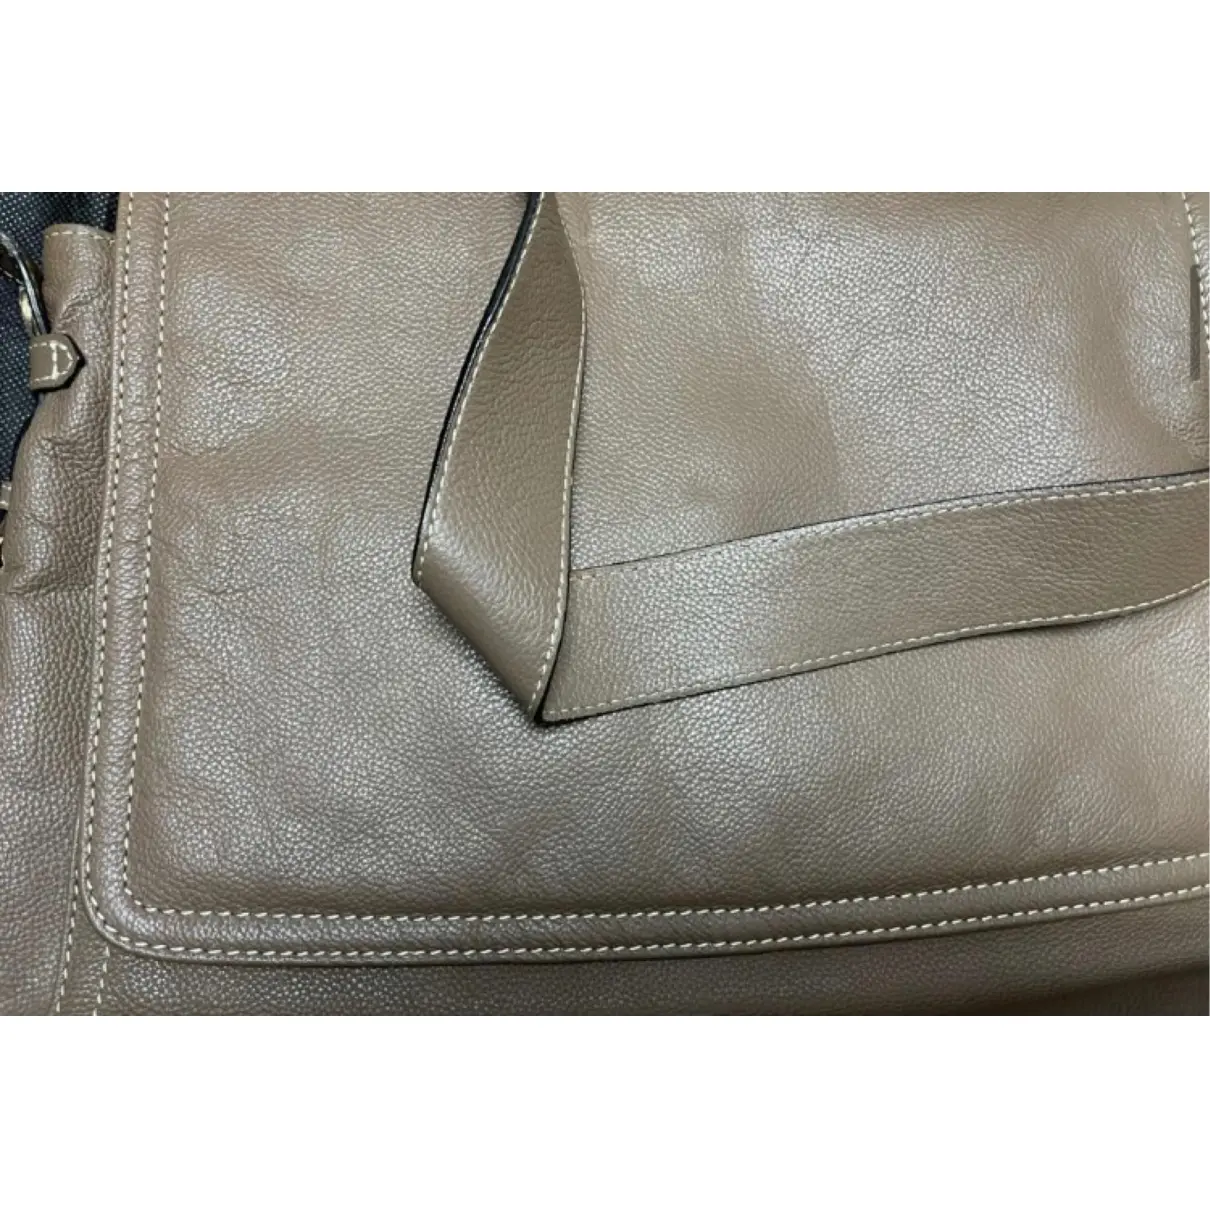 Leather handbag Carpisa